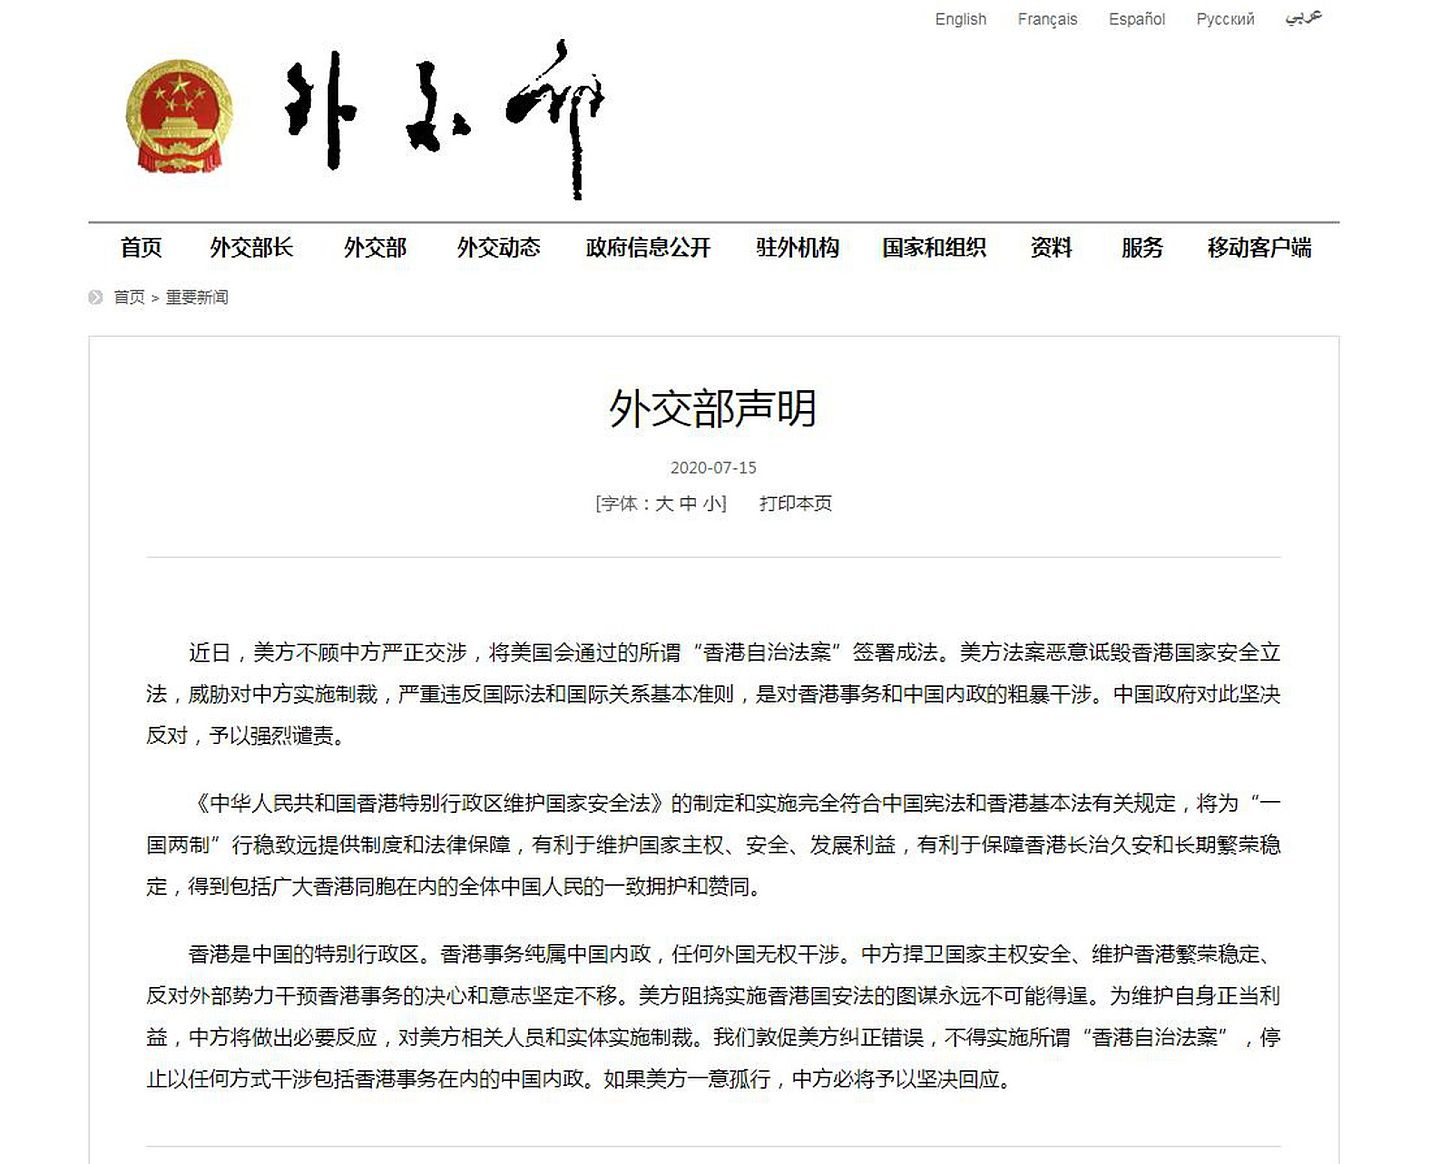 在香港问题上，特朗普已签署行政命令结束给予香港的特殊待遇，北京对此表示不满。（中国外交部官网）